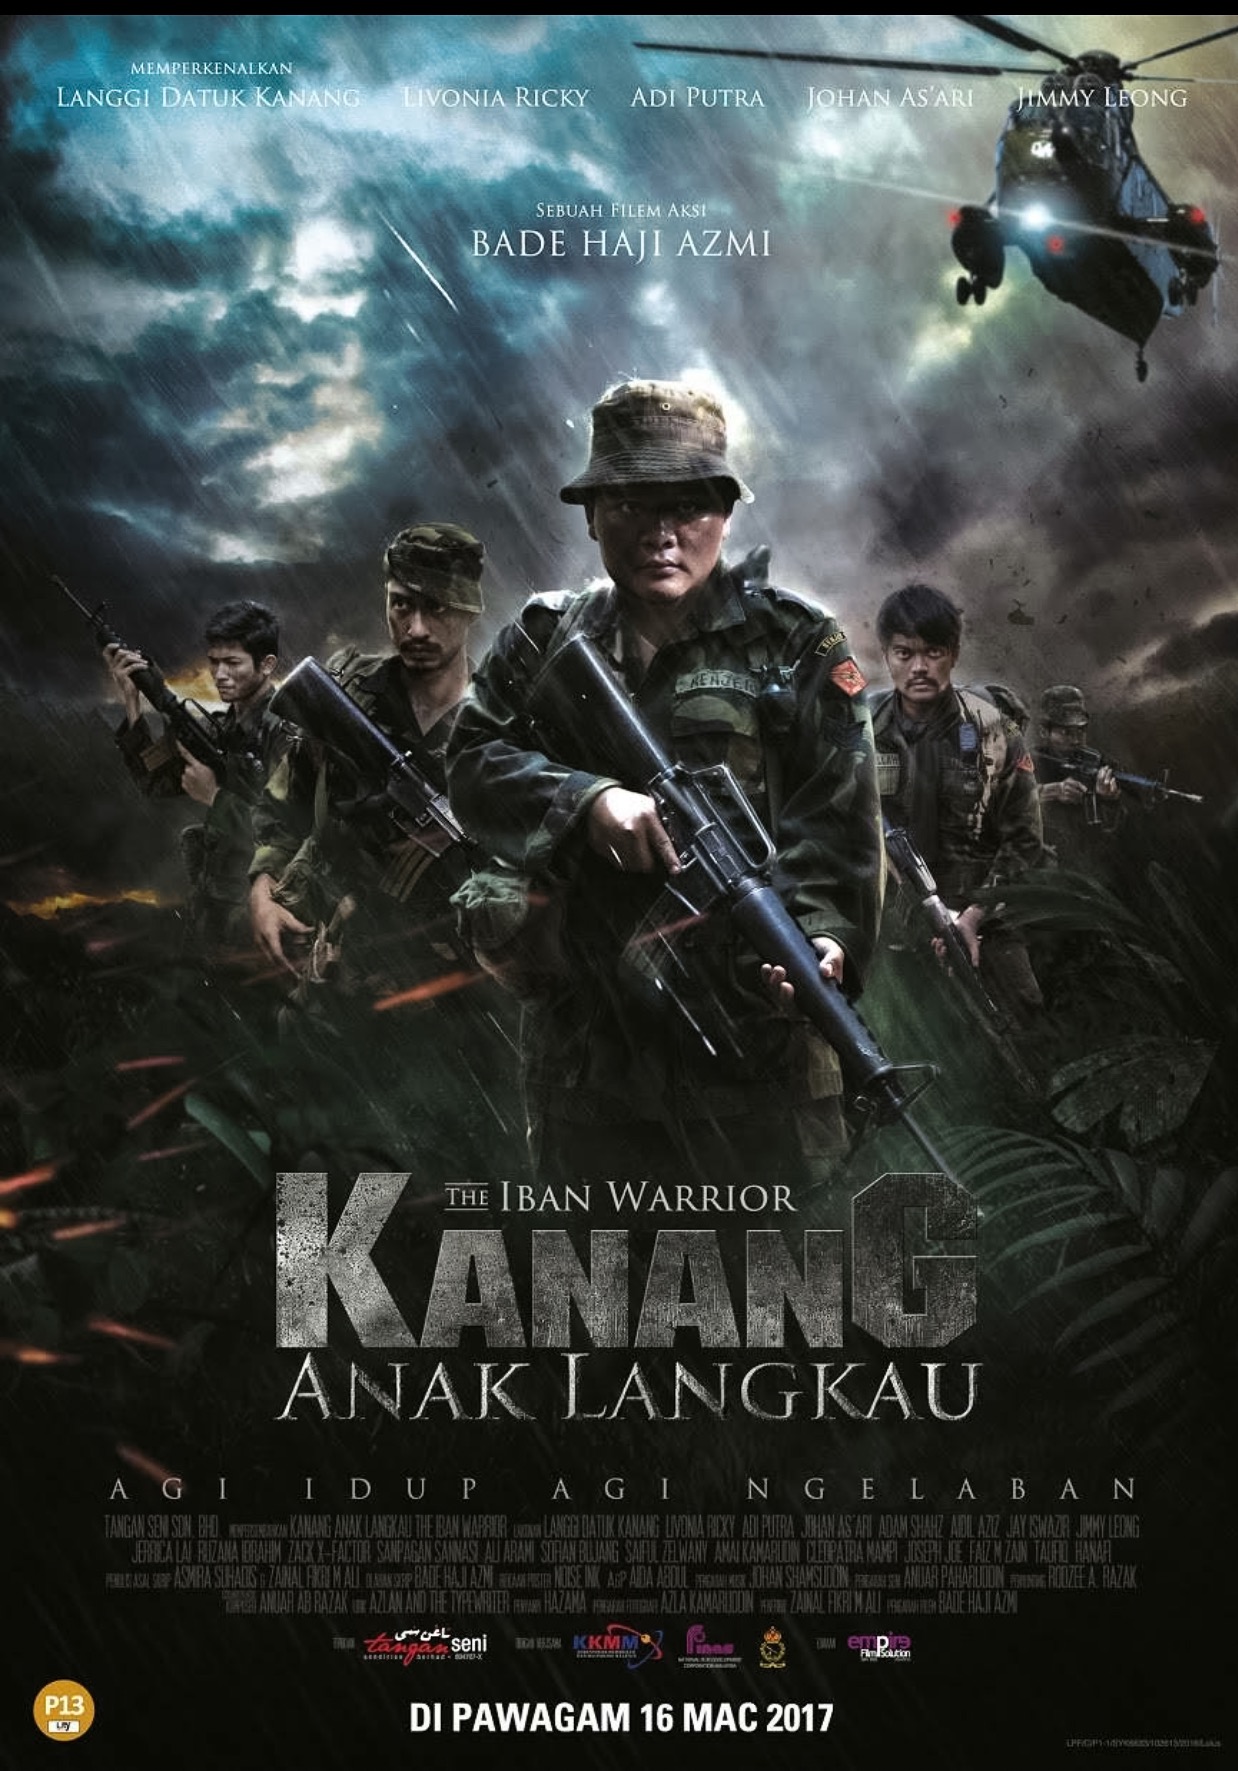 Catch "Kanang Anak Langkau: Iban Warrior" at your nearest cinema now. Image from Tangan Seni.